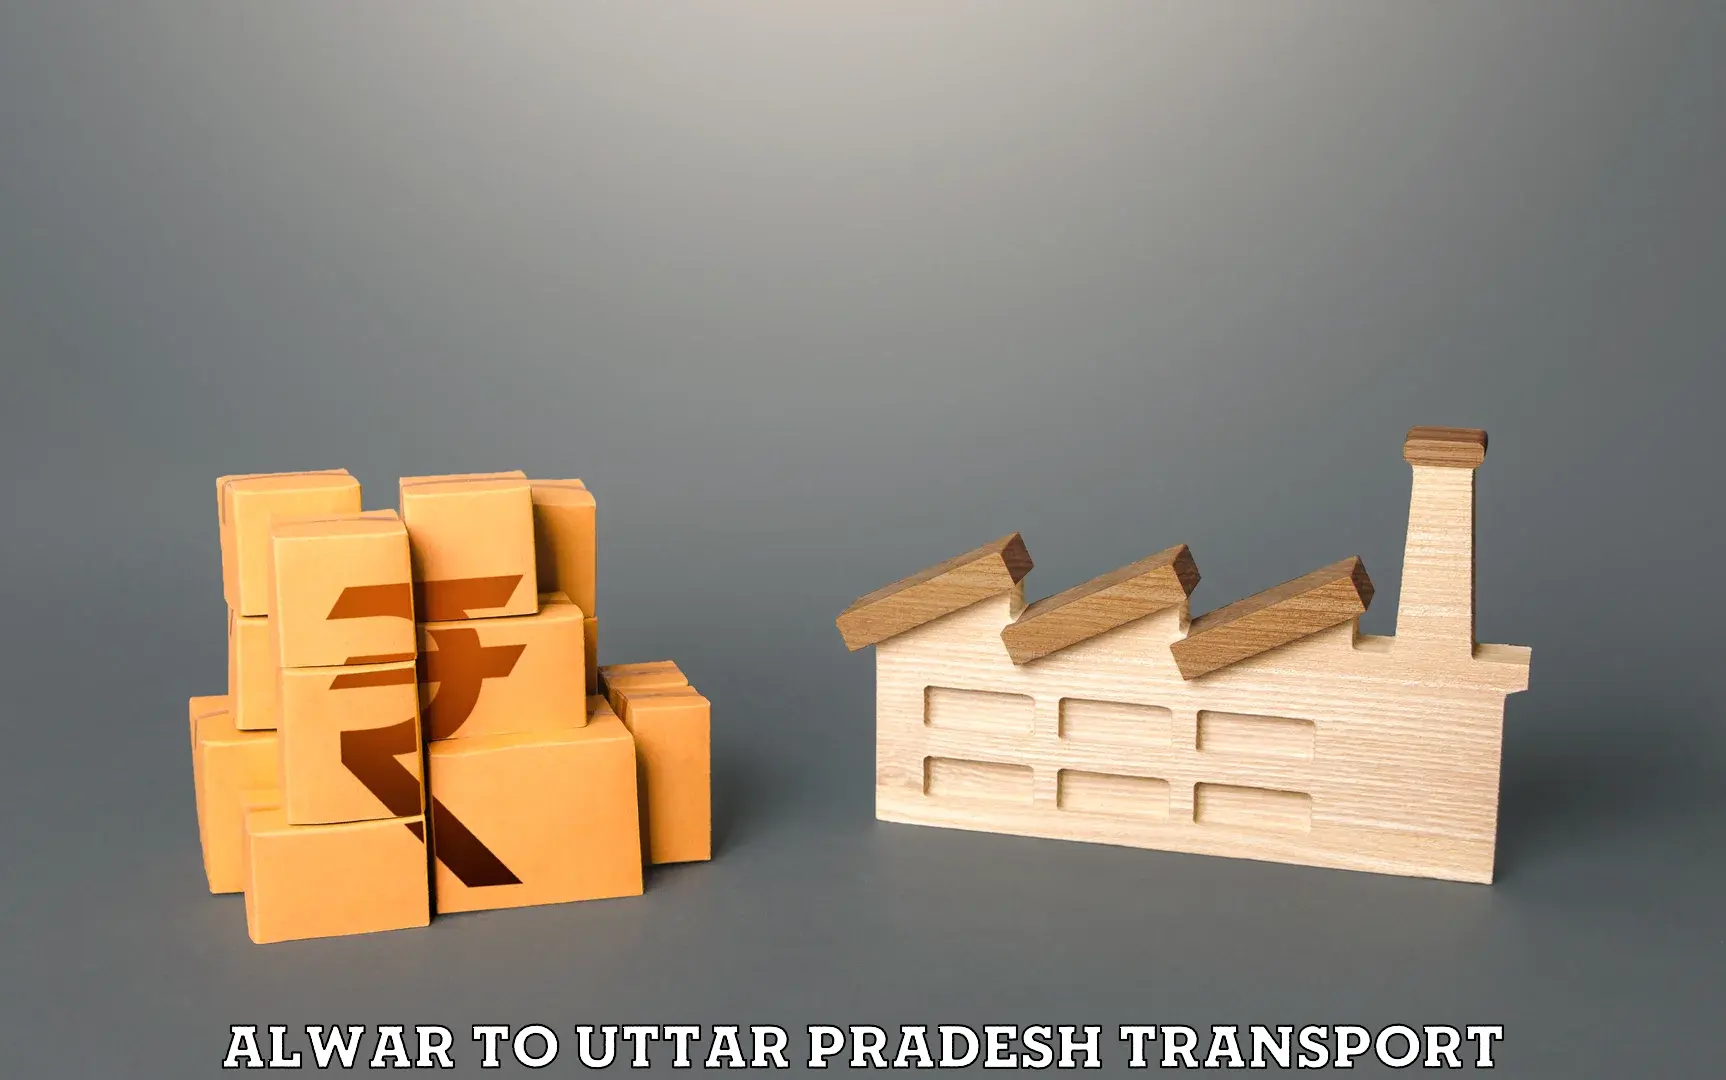 Commercial transport service Alwar to Banaras Hindu University Varanasi